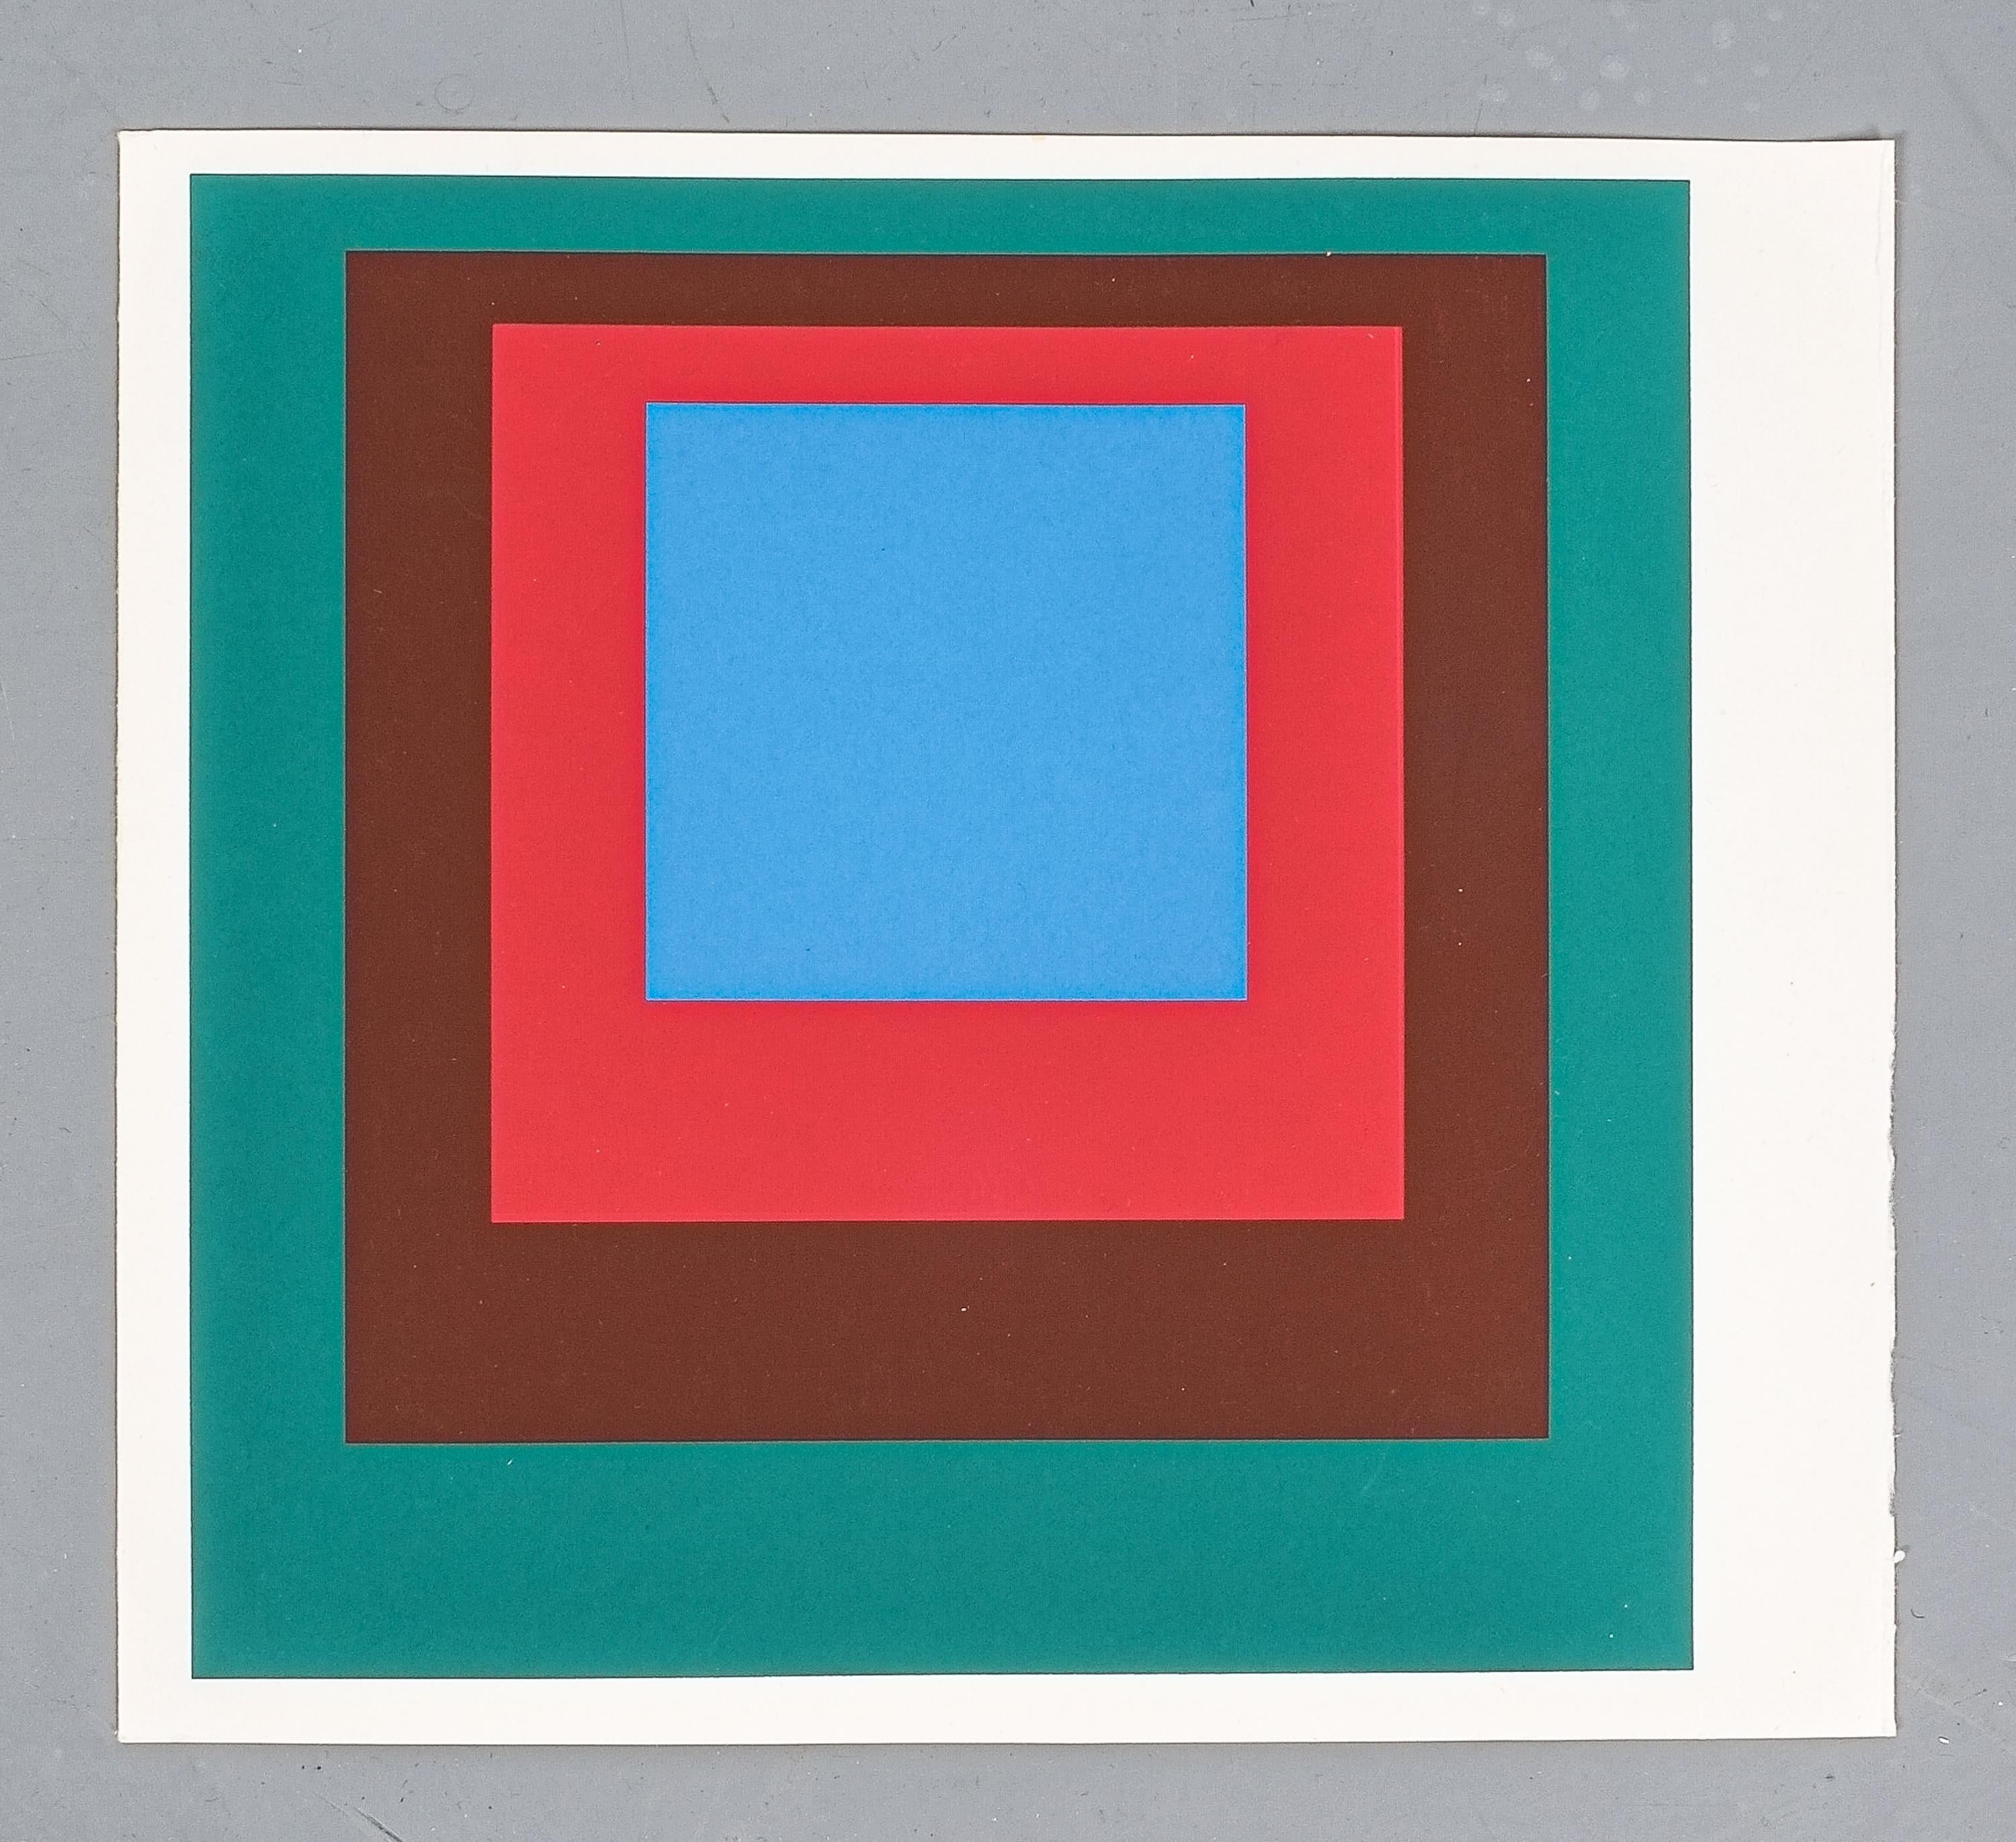 Paper 1 of 9 Screen-Prints Serigraph after Josef Albers Albers, 1977